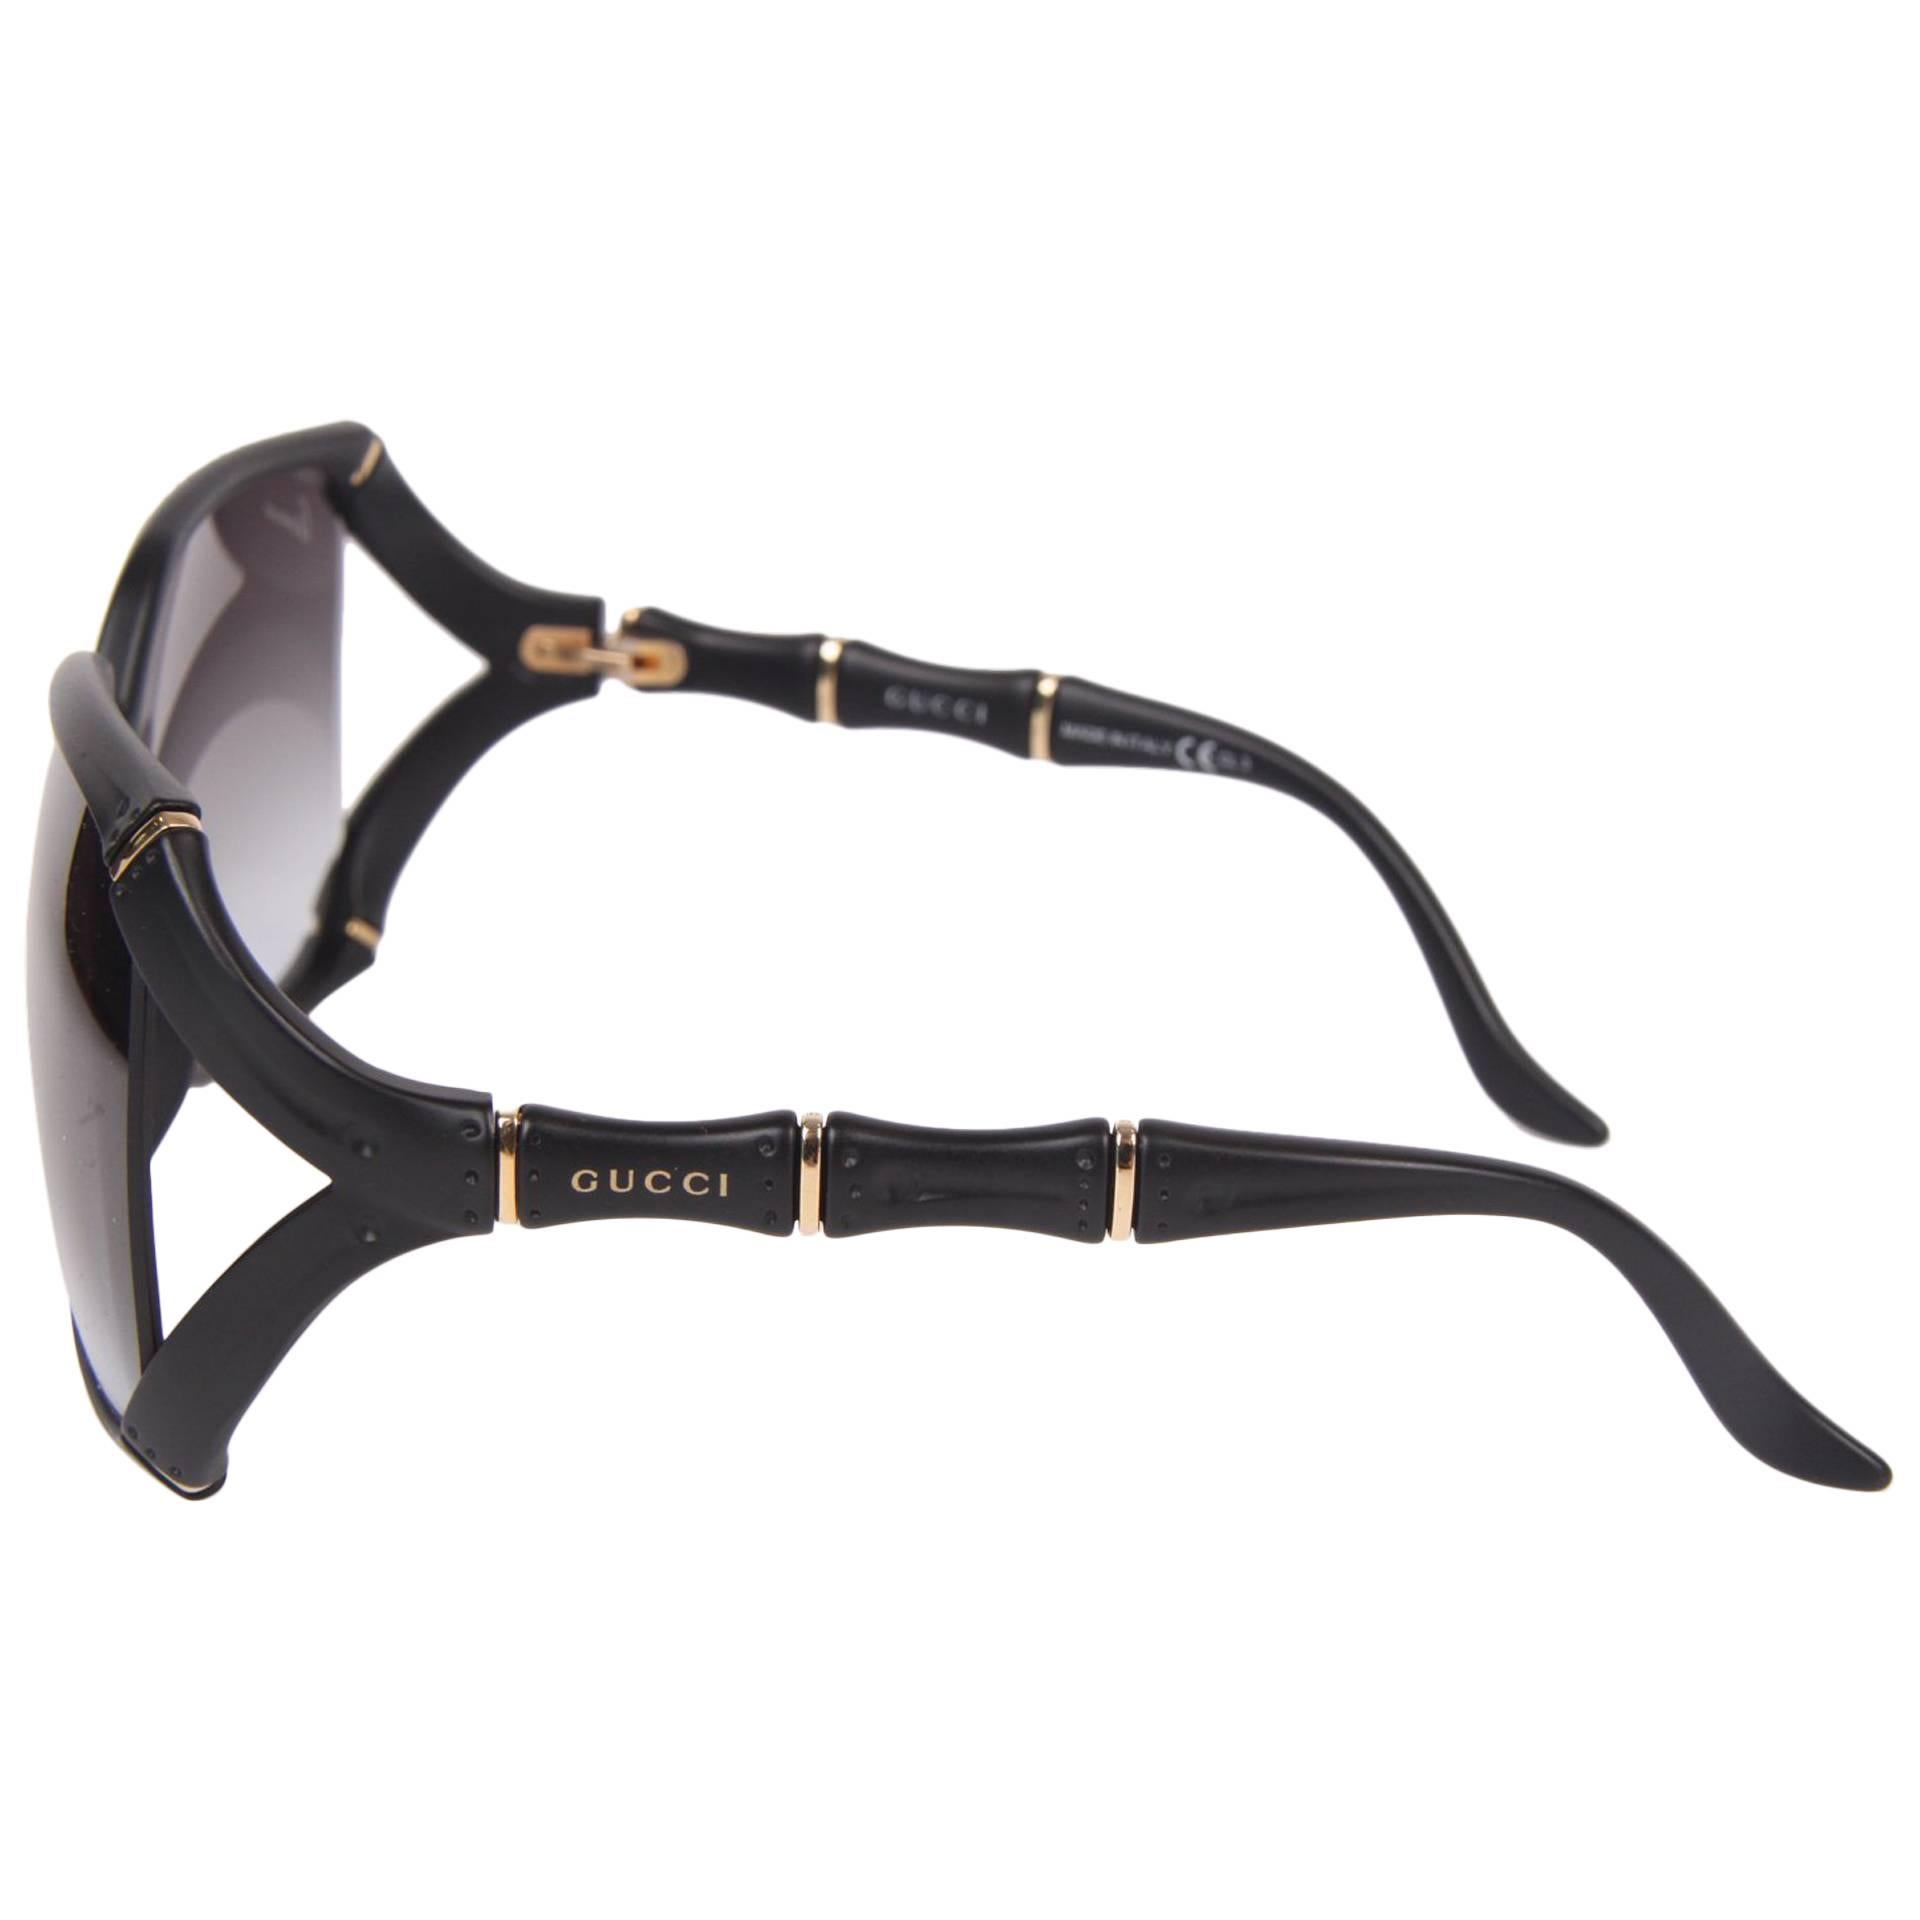 Gucci Bamboo Sunglasses - black